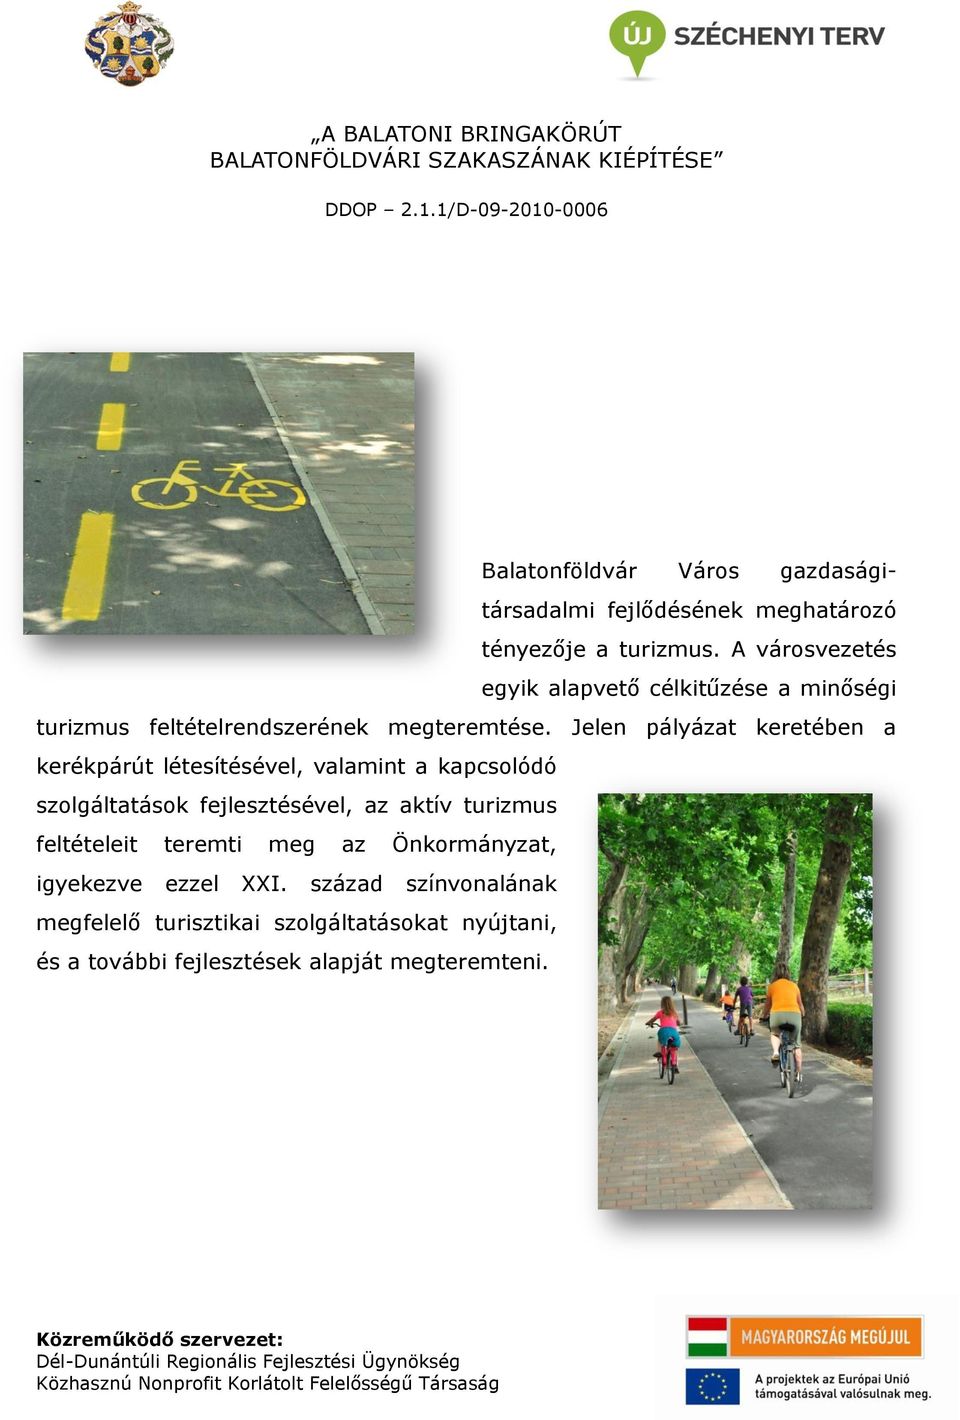 Jelen pályázat keretében a kerékpárút létesítésével, valamint a kapcsolódó szolgáltatások fejlesztésével, az aktív